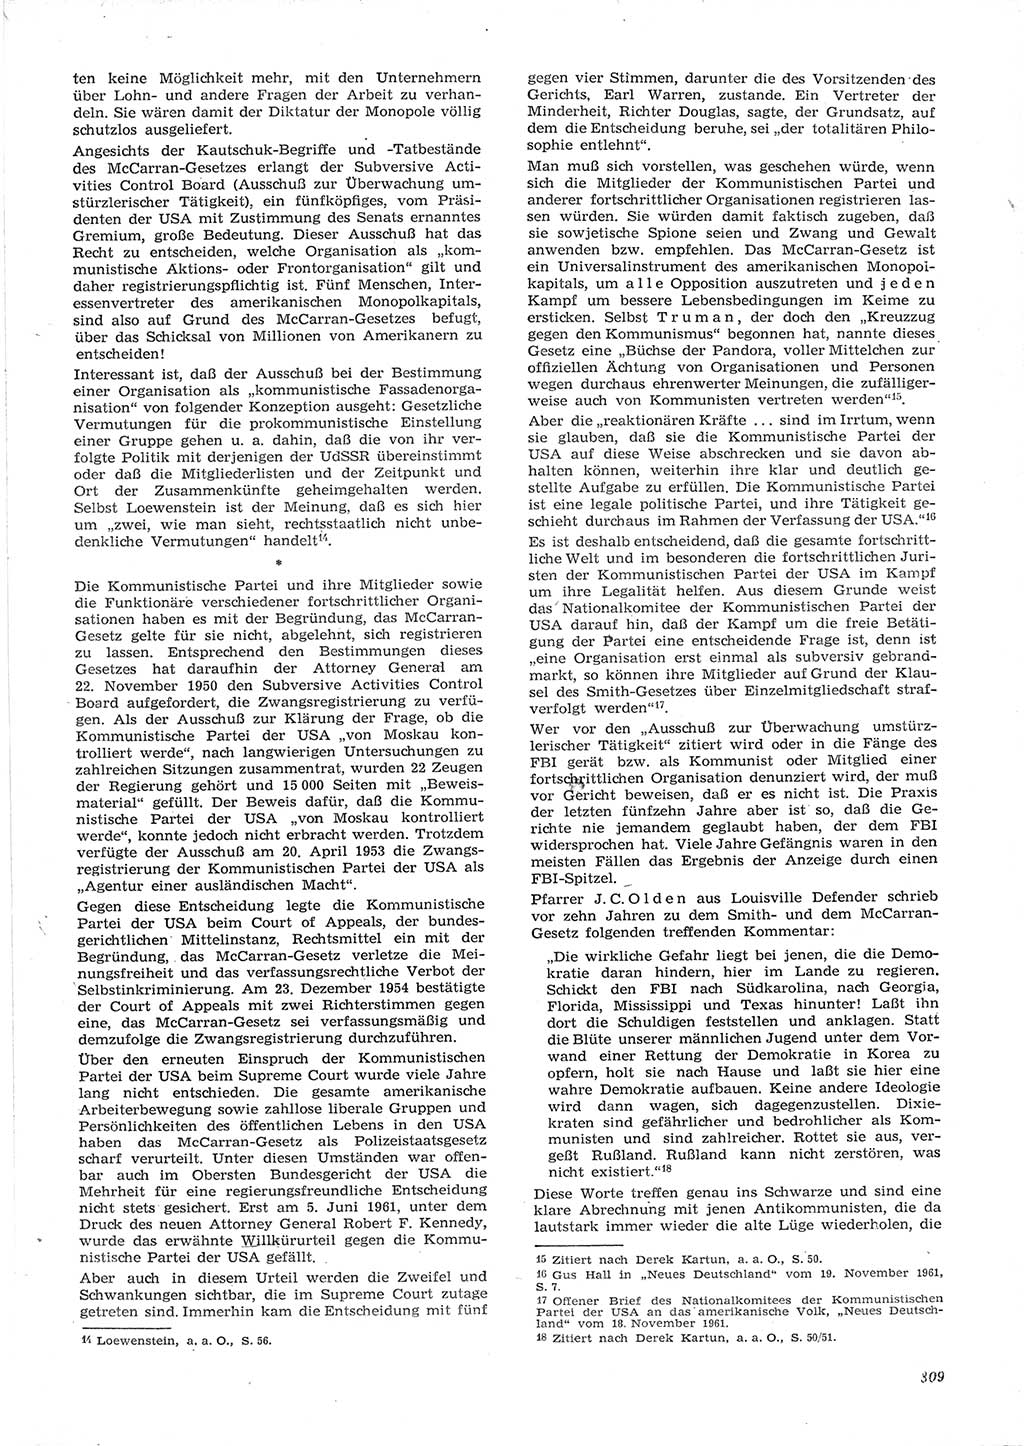 Neue Justiz (NJ), Zeitschrift für Recht und Rechtswissenschaft [Deutsche Demokratische Republik (DDR)], 15. Jahrgang 1961, Seite 809 (NJ DDR 1961, S. 809)